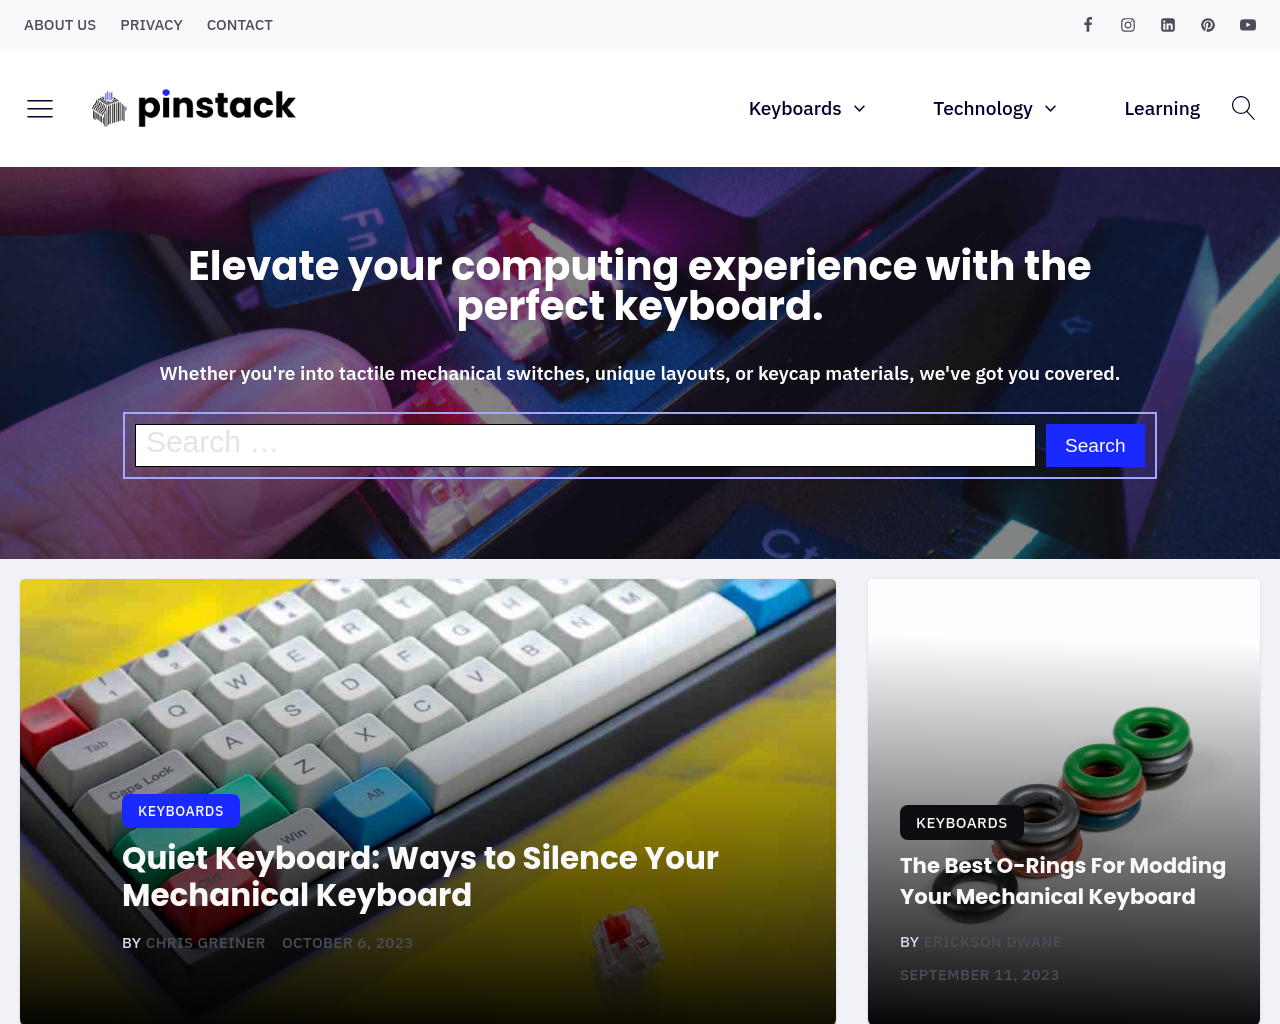 pinstack.com